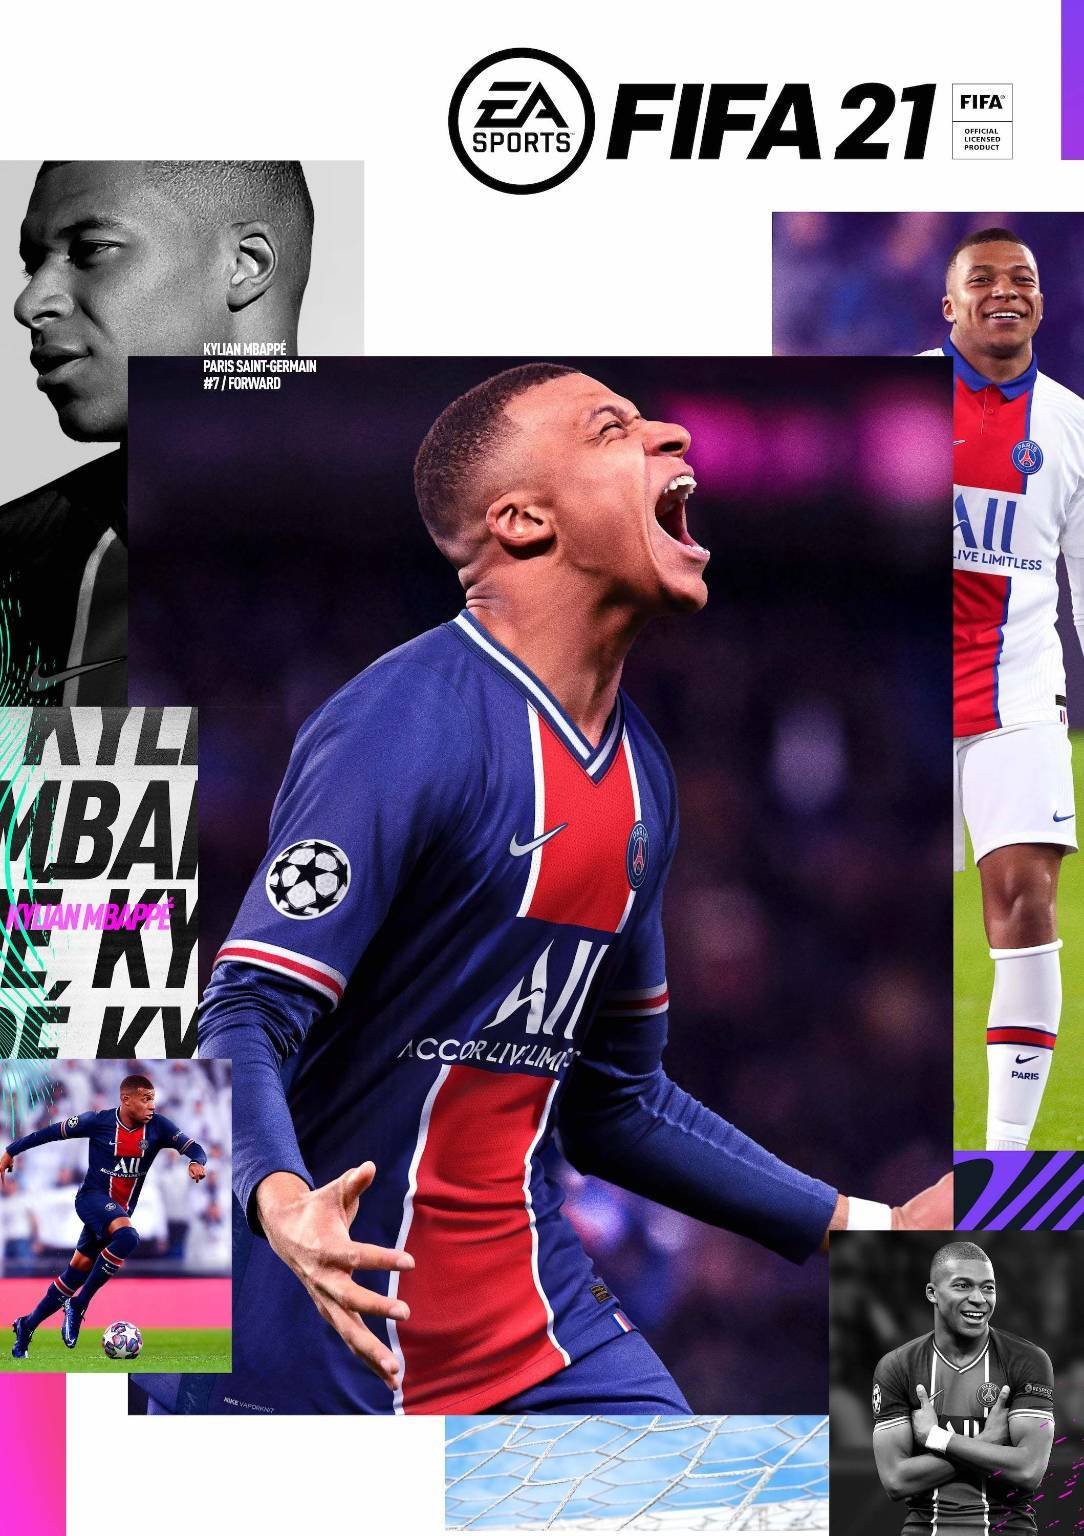 Immagine di FIFA 21 e i migliori videogames e accessori del franchise